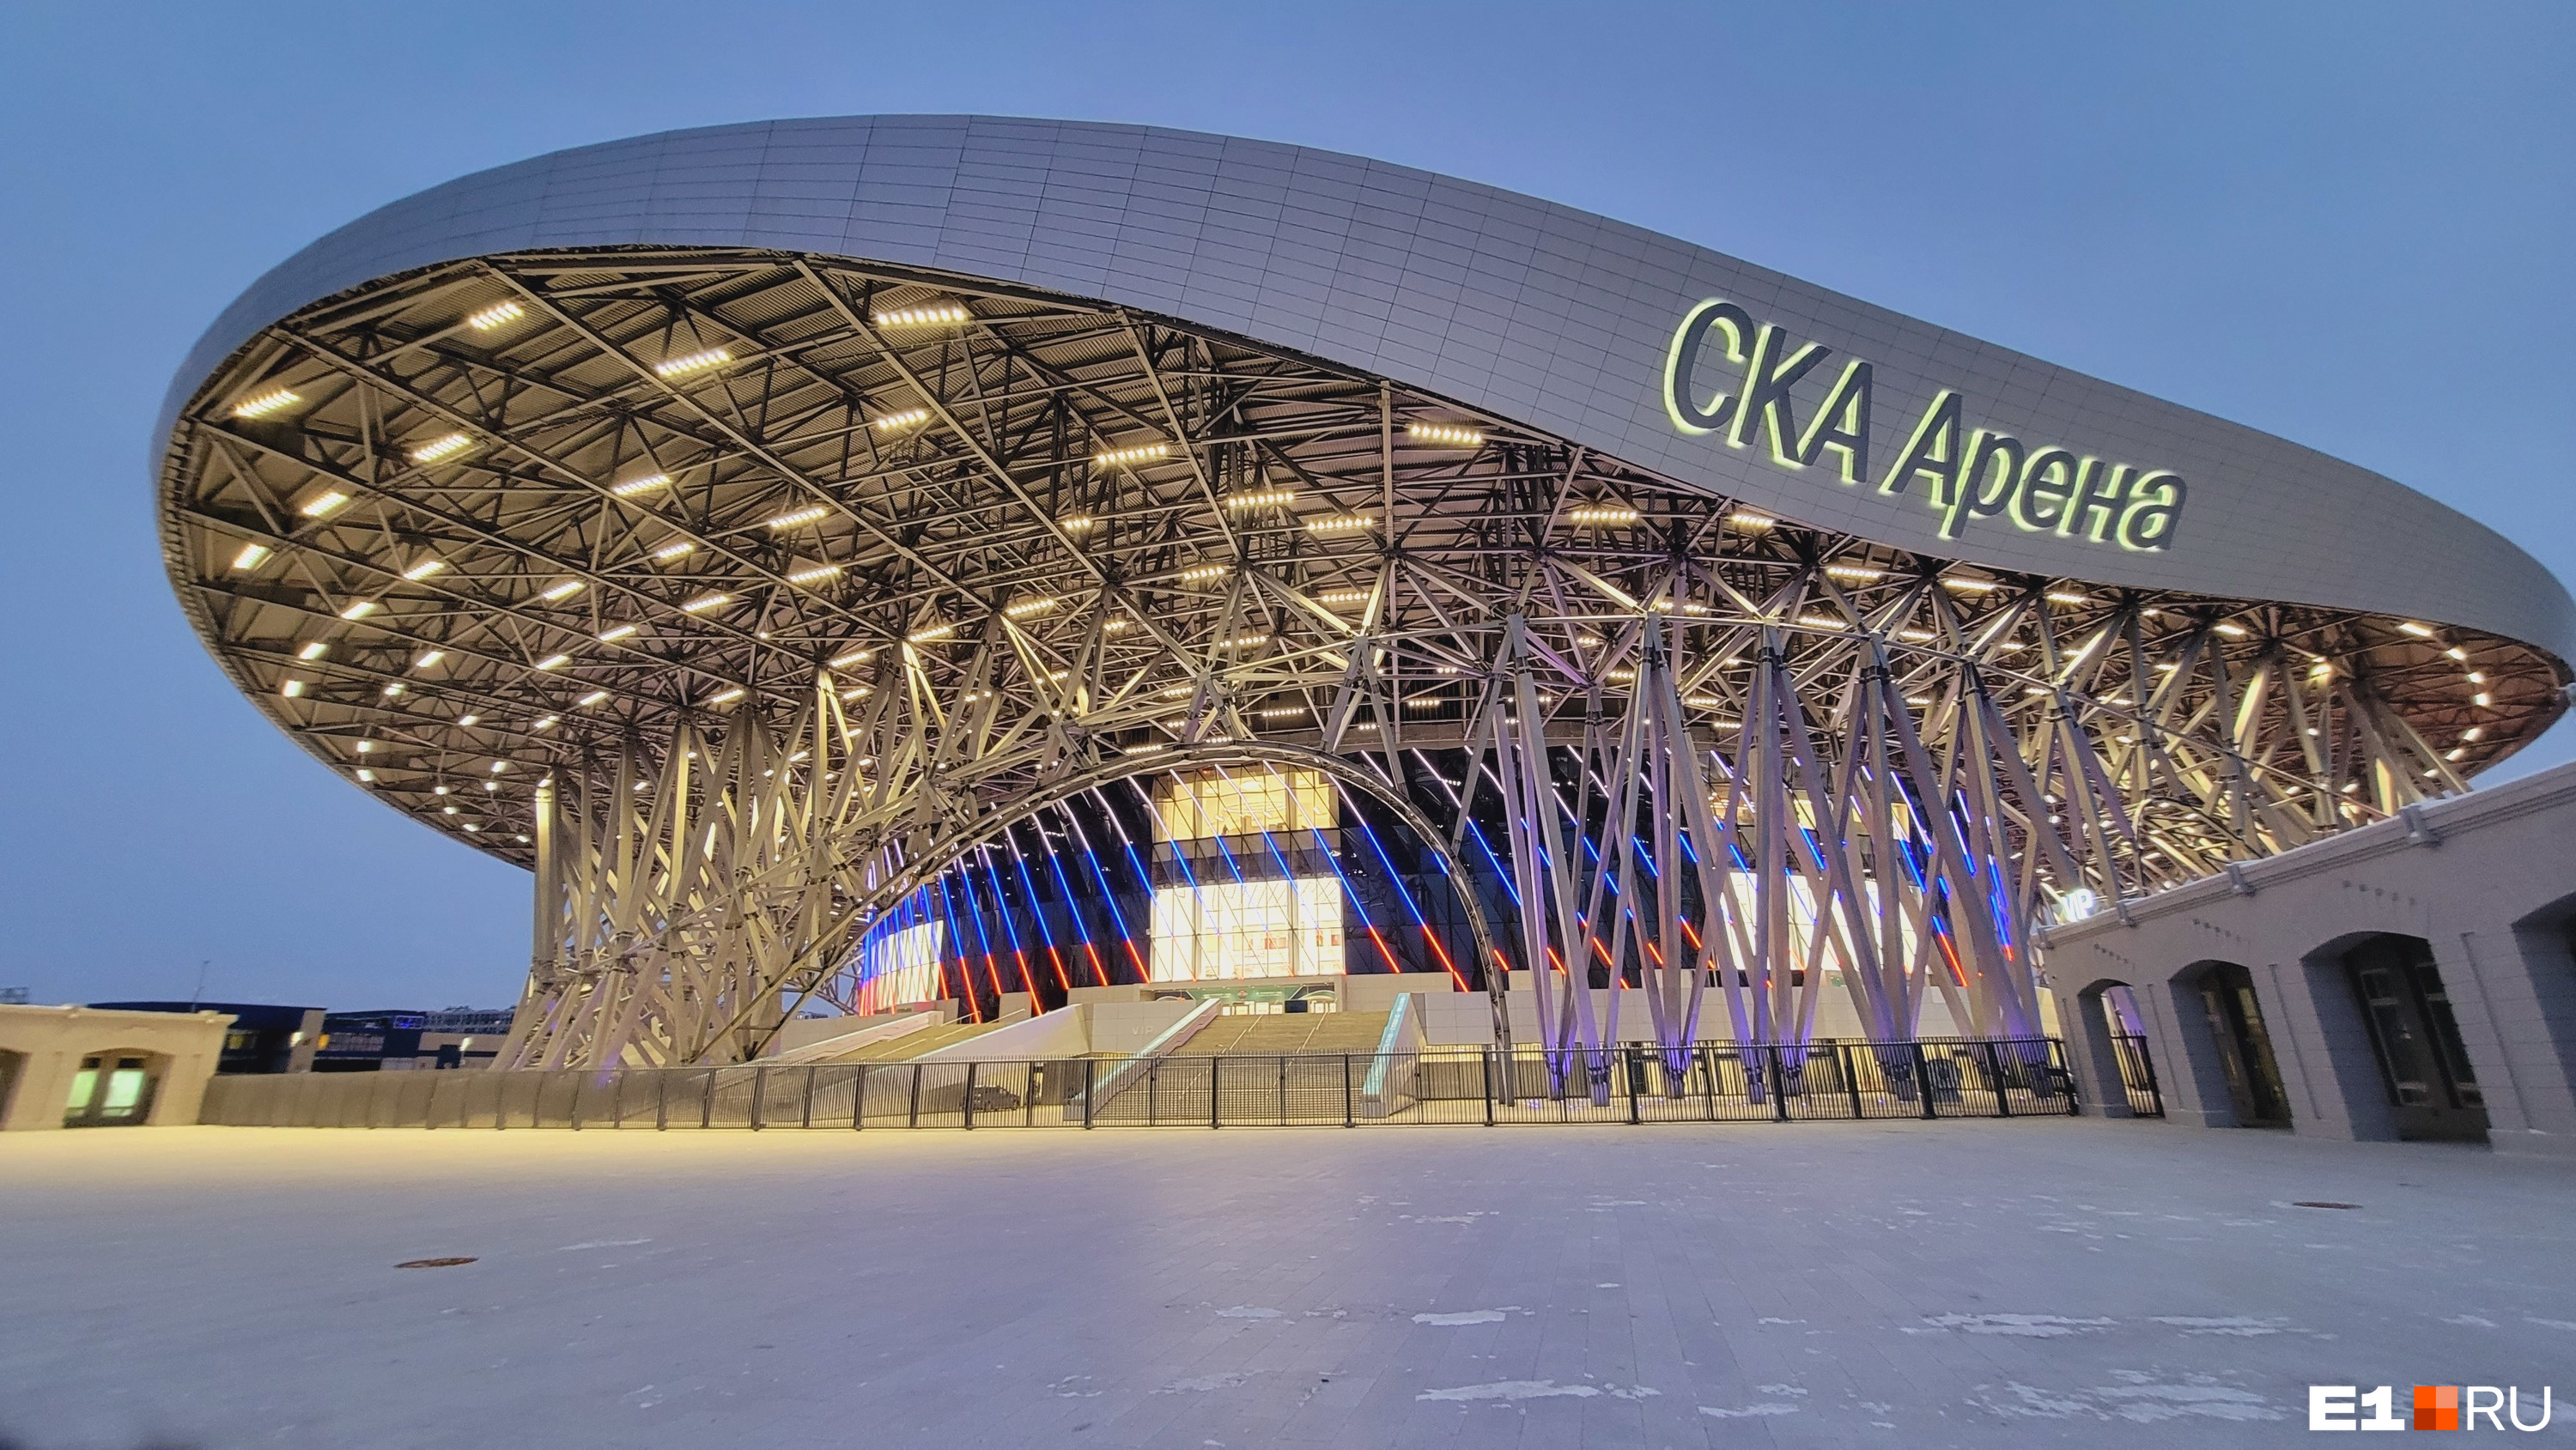 В Екатеринбурге будет круче? Сравниваем «УГМК Арену» с гигантским ледовым дворцом в Санкт-Петербурге